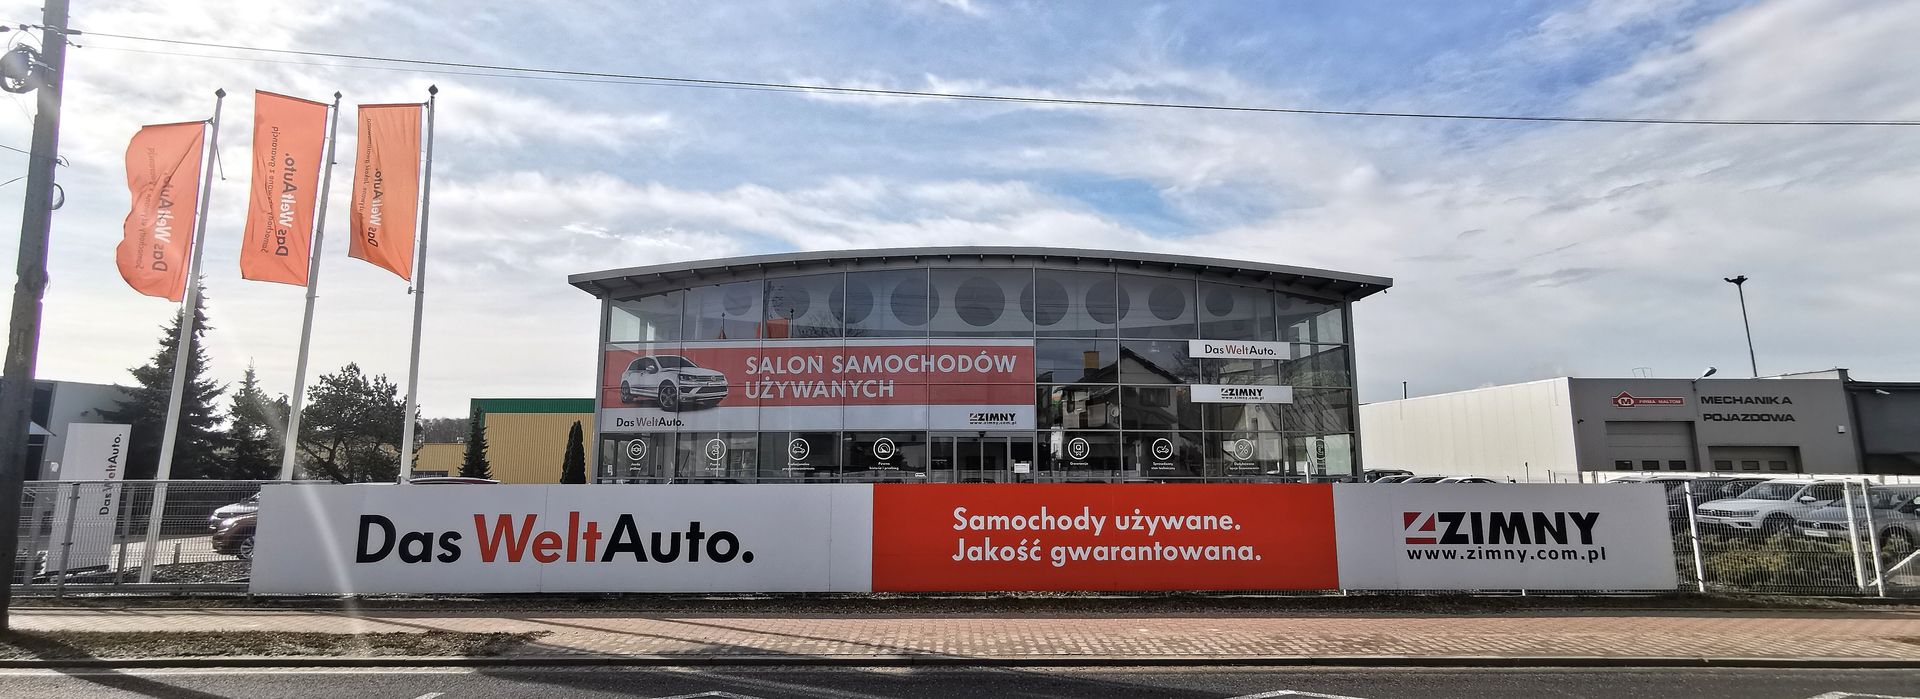 Zimny Auto Sp. z o.o. | Tomaszów Mazowiecki | top banner